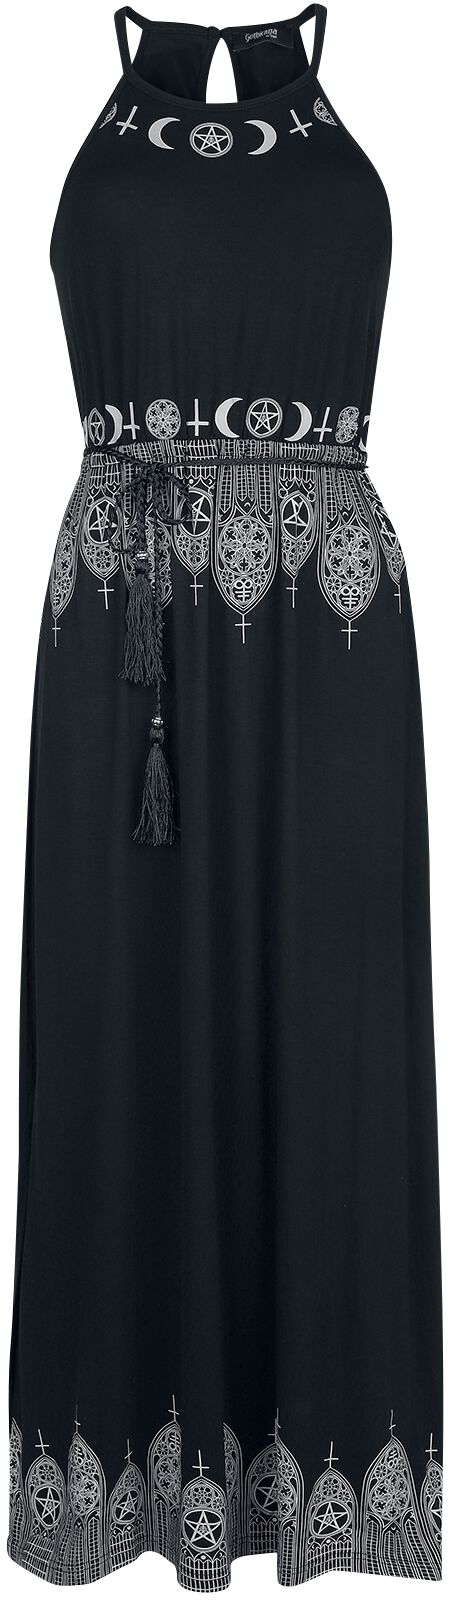 Gothicana by EMP Schwarzes Maxikleid mit Prints und schmalem Bindegürtel Langes Kleid schwarz in M